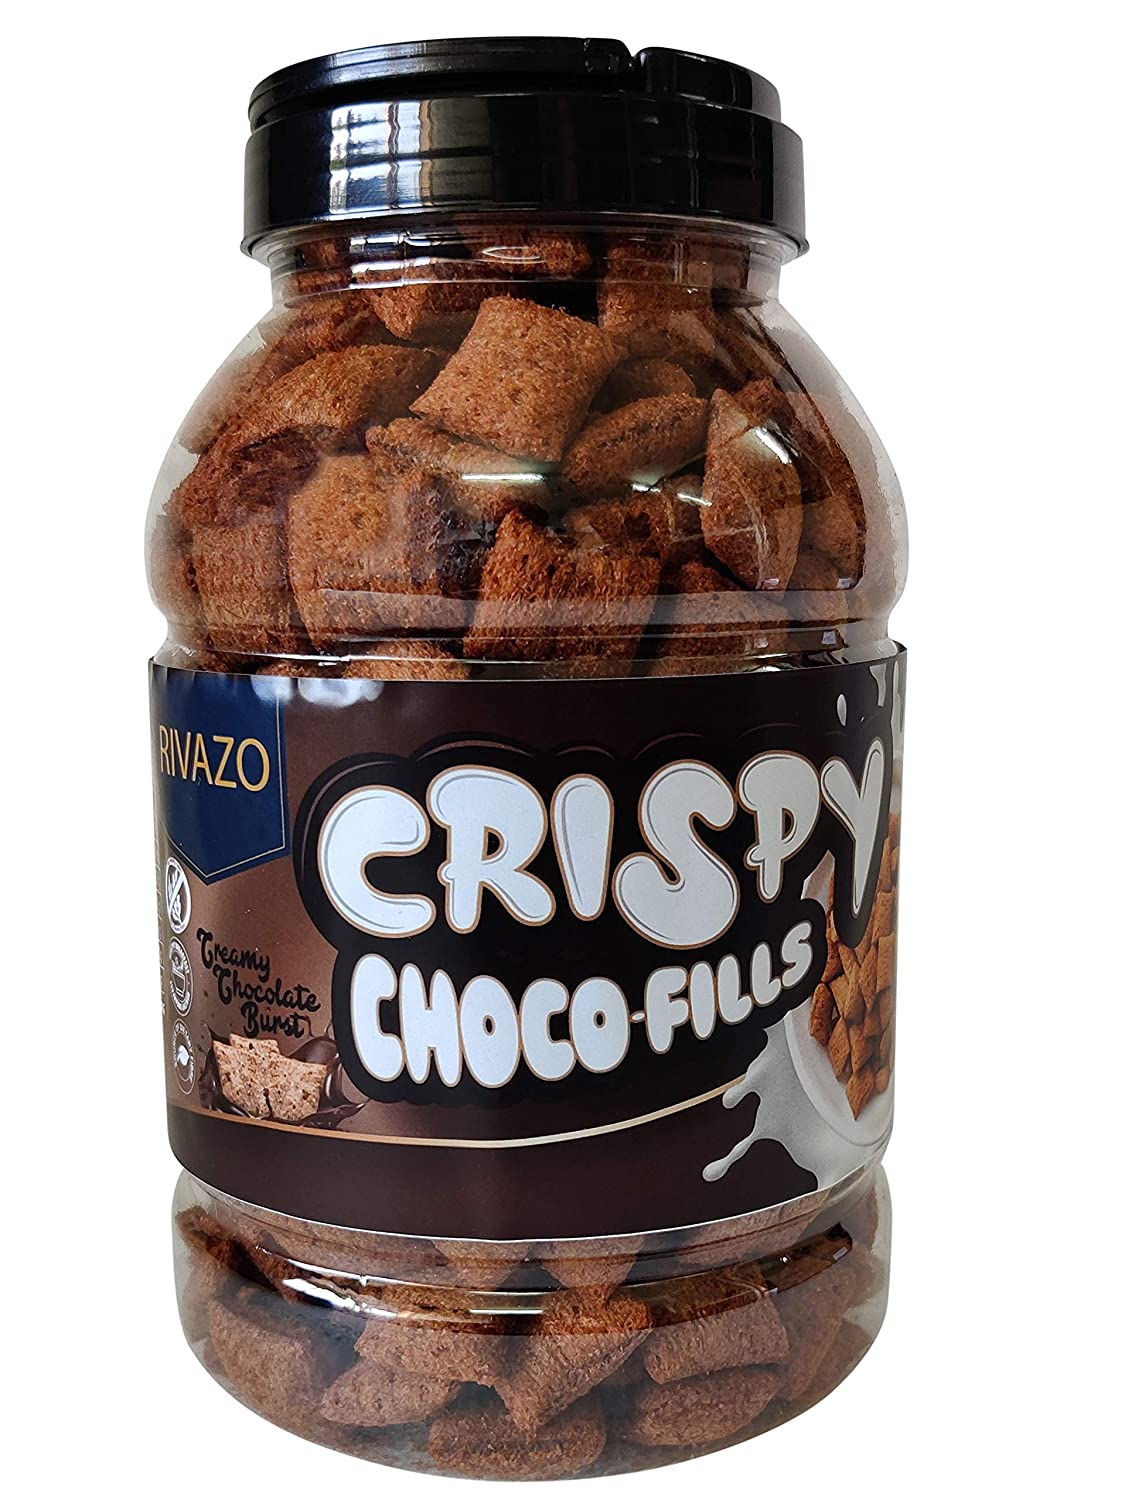 Rivazo Multigrain Chocolate Fills  Image